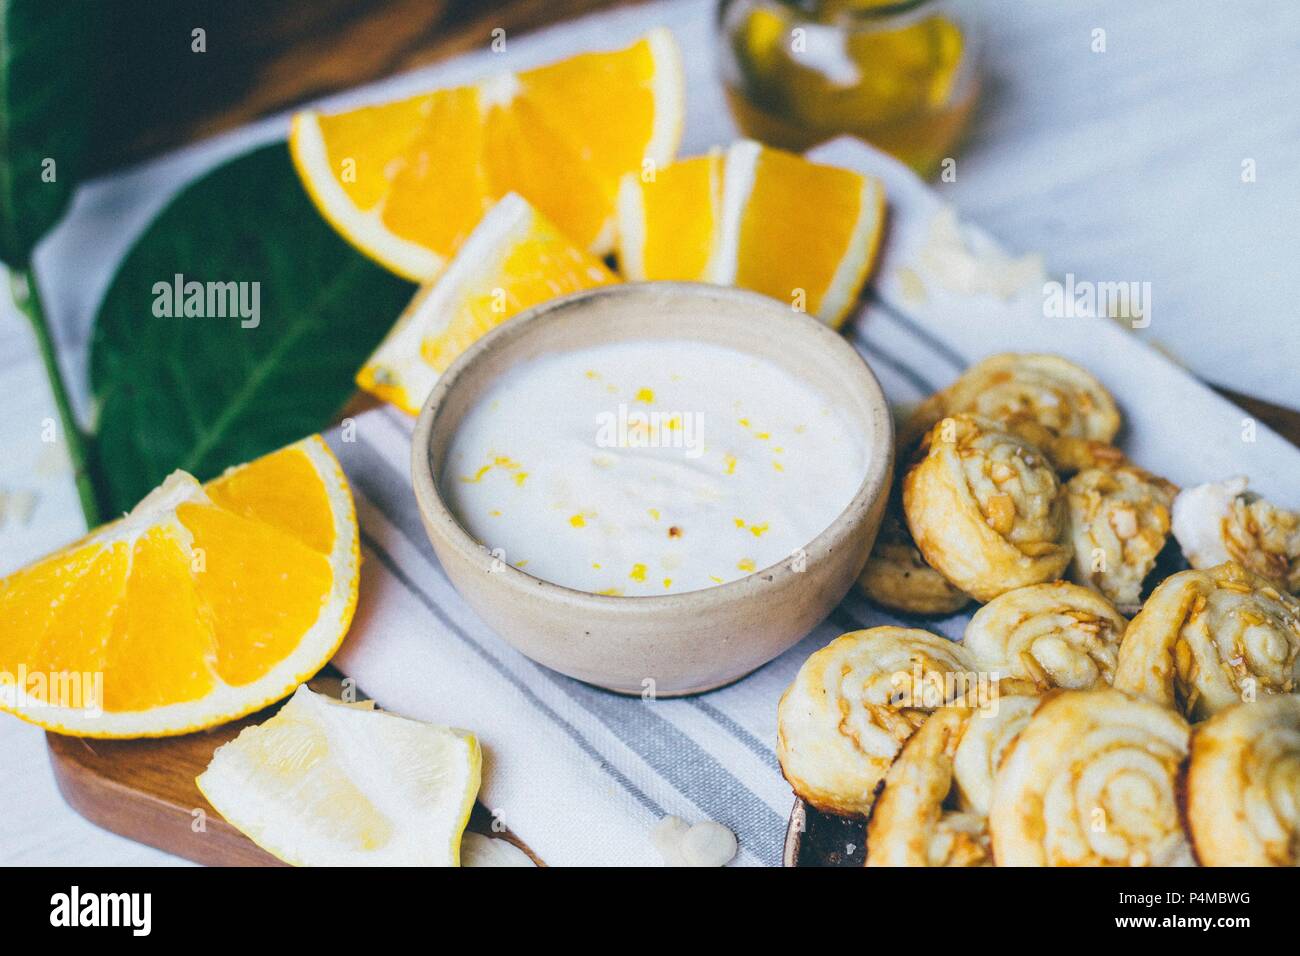 Palmier pastries with orange cream Stock Photo